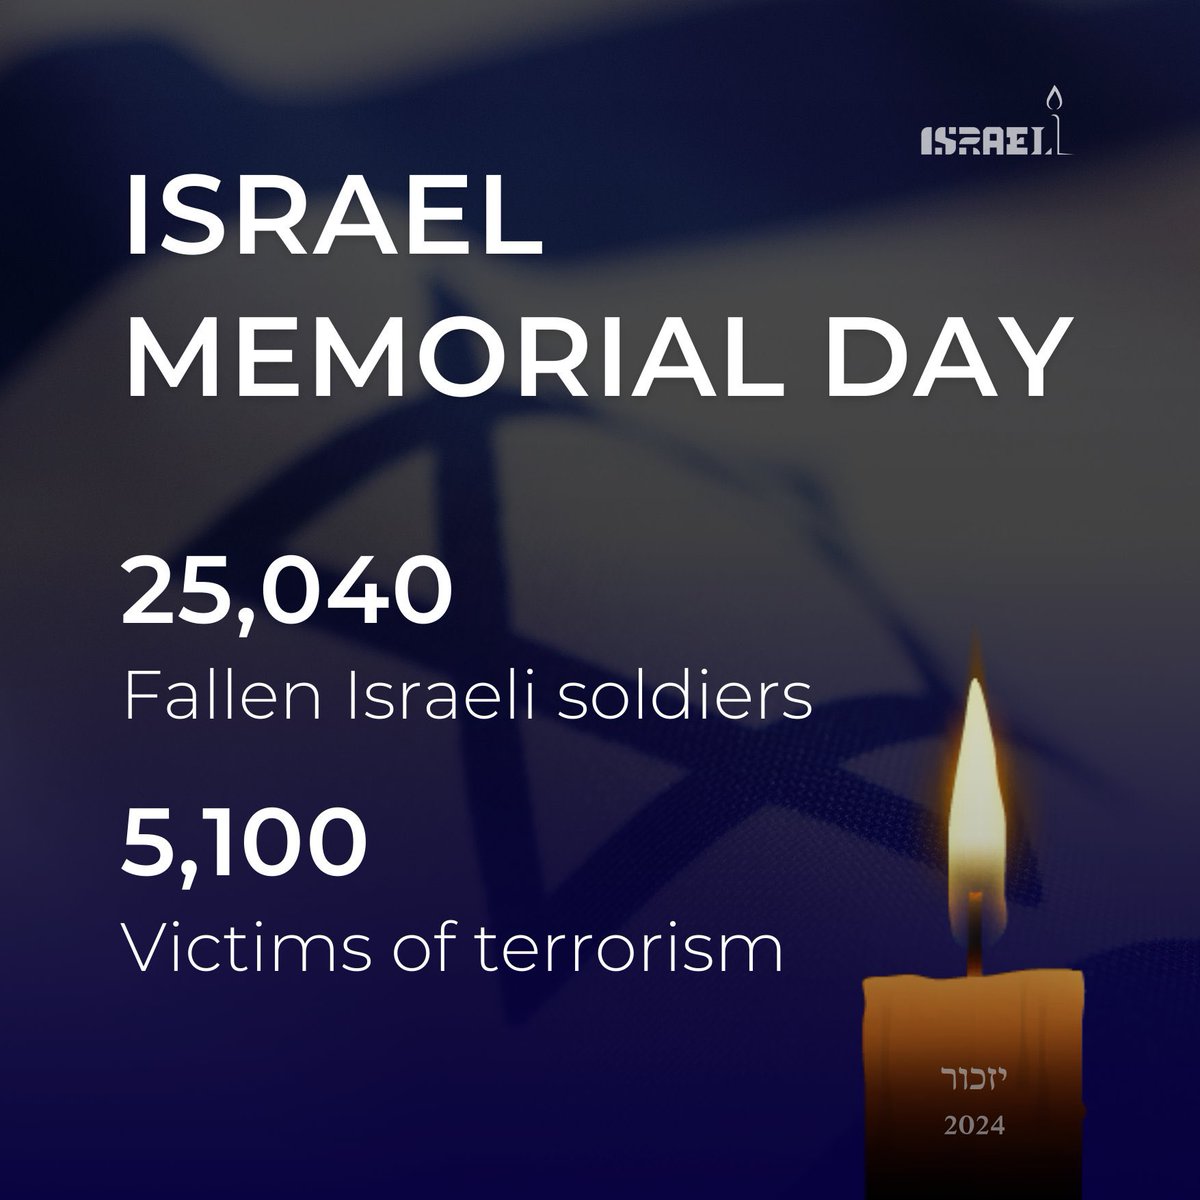 Θυμόμαστε τους 25.040 πεσόντες Ισραηλινούς στρατιώτες και τα 5.100 θύματα της τρομοκρατίας από την ίδρυση της χώρας μας. Αυτή η #Ημέρα #Μνήμης του #Ισραήλ είναι ιδιαίτερα δύσκολη. Στεκόμαστε αλληλέγγυοι στις οικογένειες των θυμάτων, στους ένστολους άνδρες και γυναίκες μας και